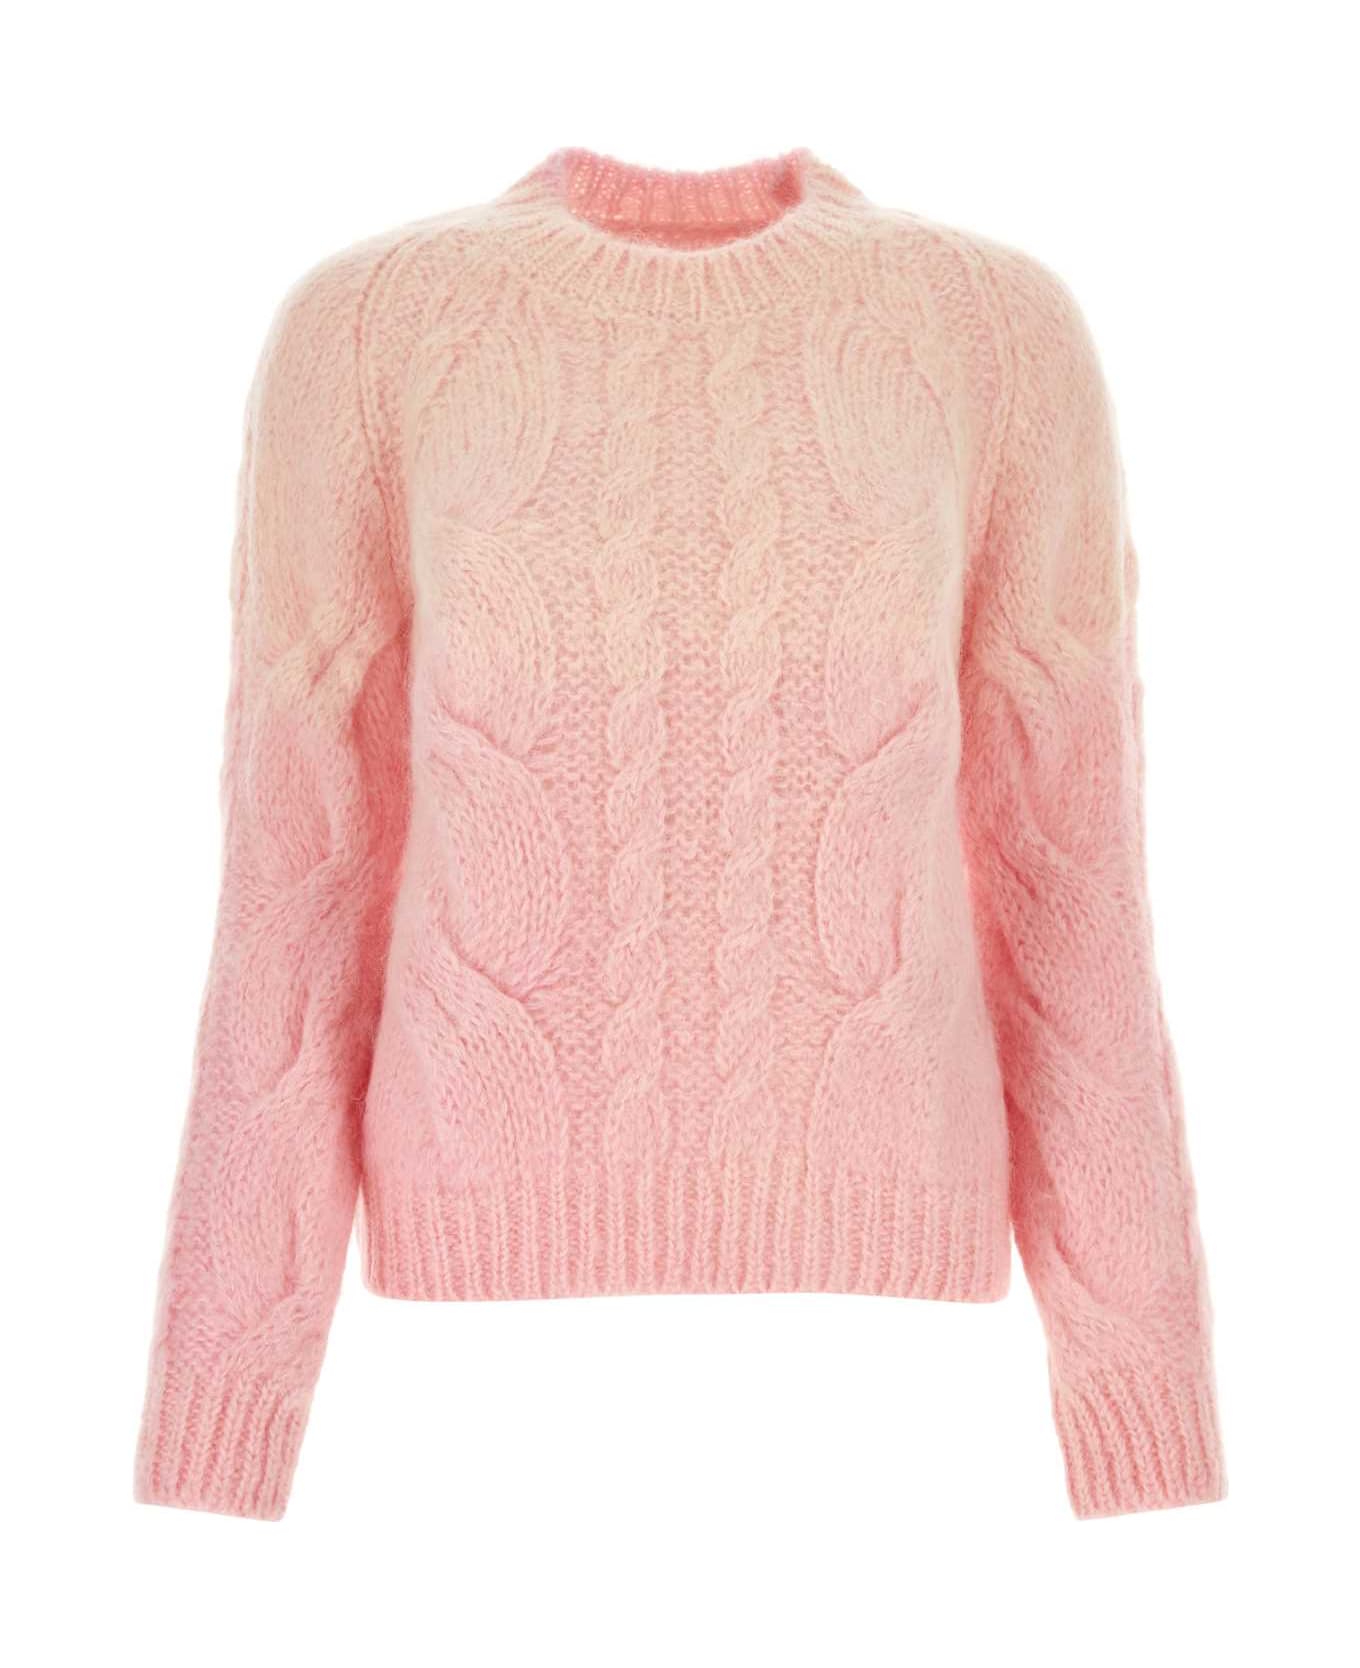 Maison Margiela Pink Mohair Blend Sweater - PINK